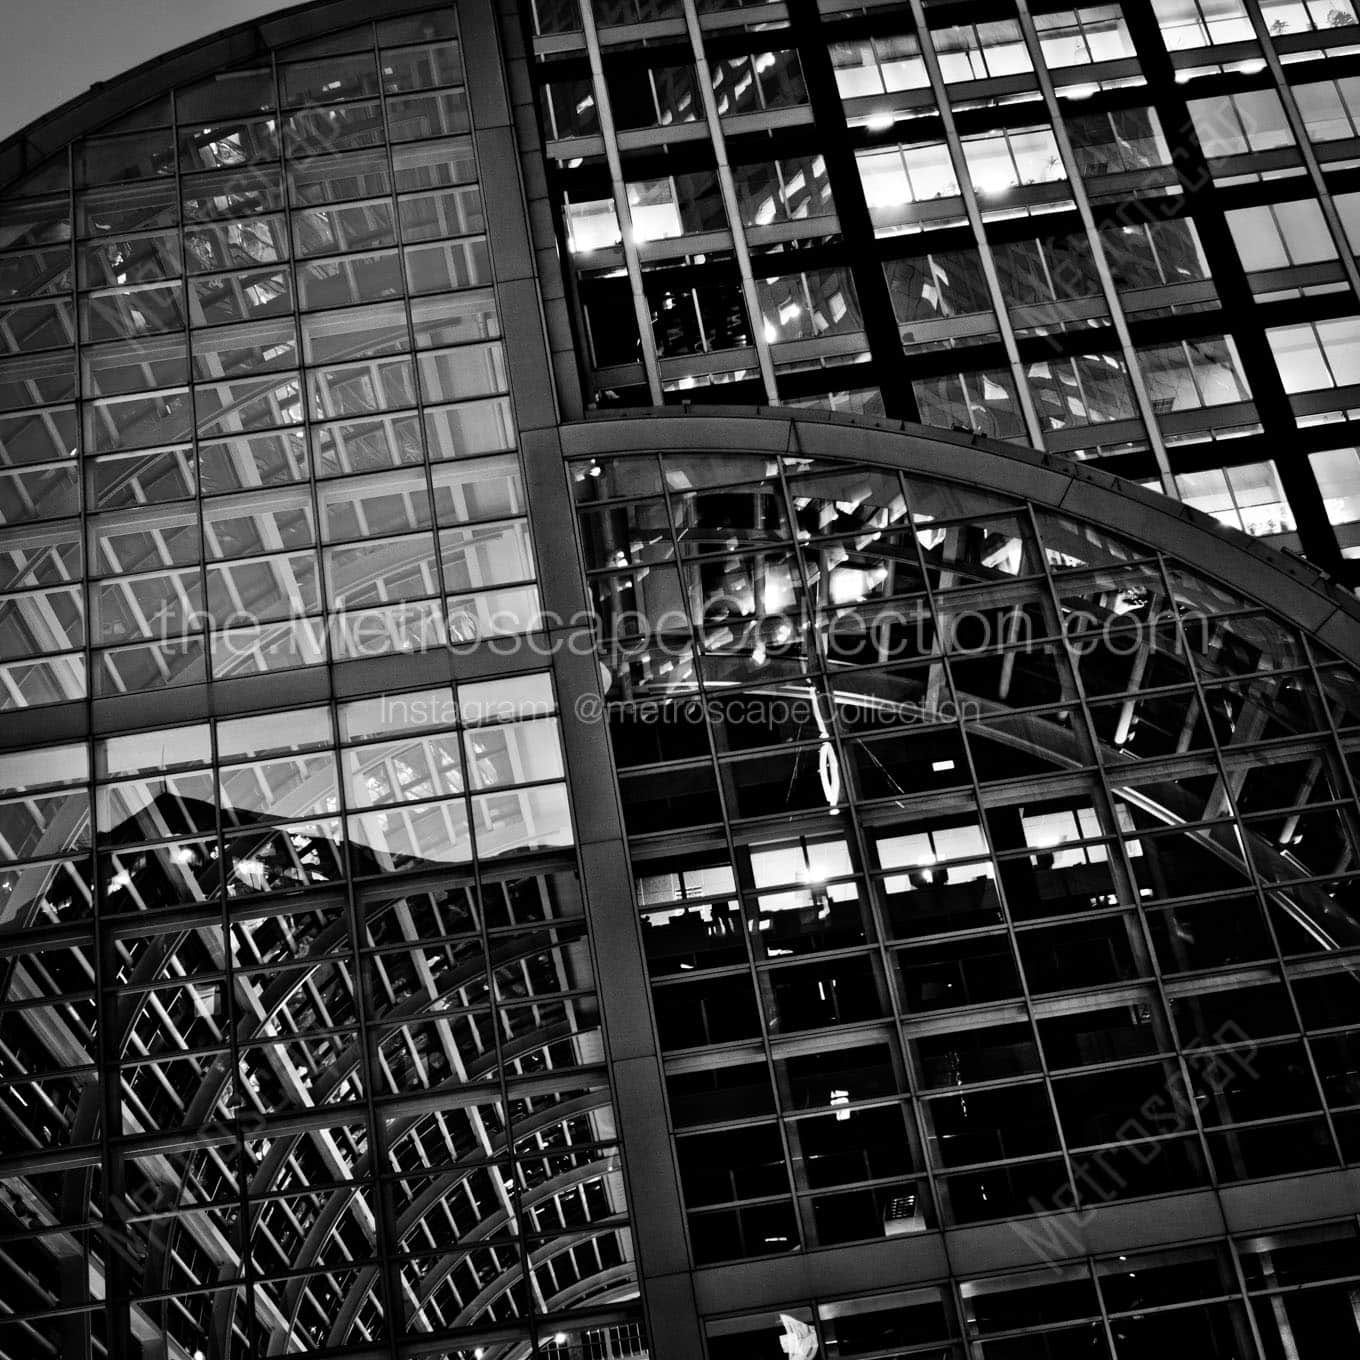 wells fargo building atrium Black & White Office Art